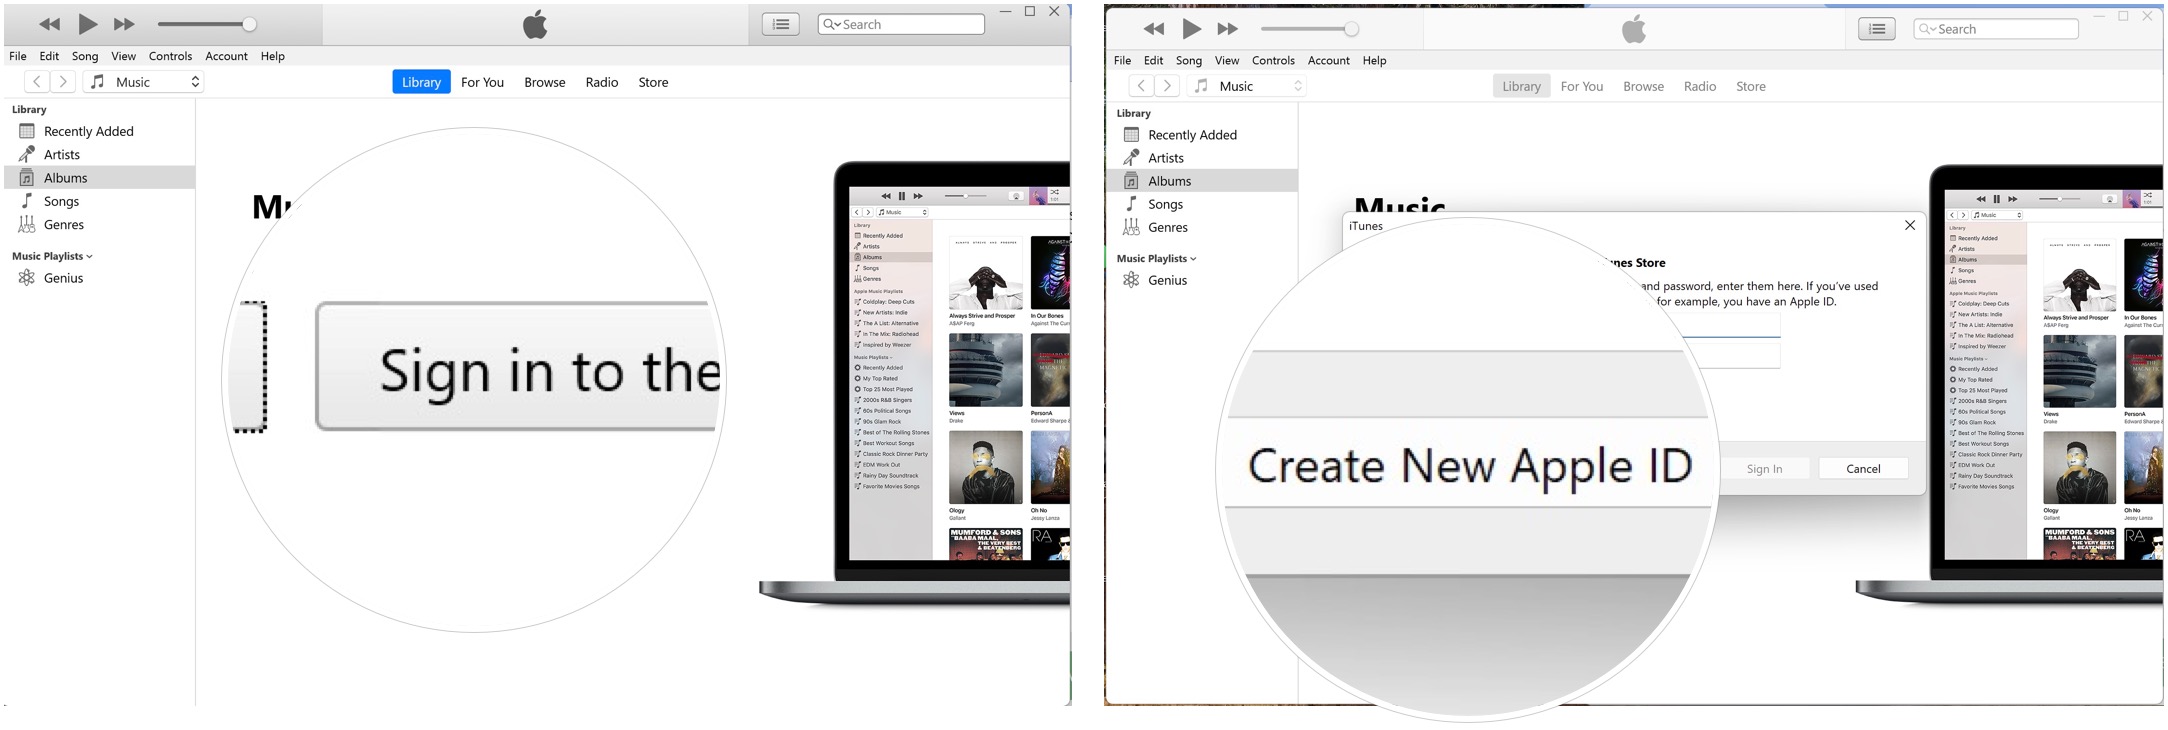 Um eine Apple ID unter Windows zu erstellen, öffnen Sie iTunes und stimmen Sie den präsentierten Bedingungen zu.  Klicken Sie auf Beim iTunes Store anmelden.  Wählen Sie „Neue Apple-ID erstellen“.